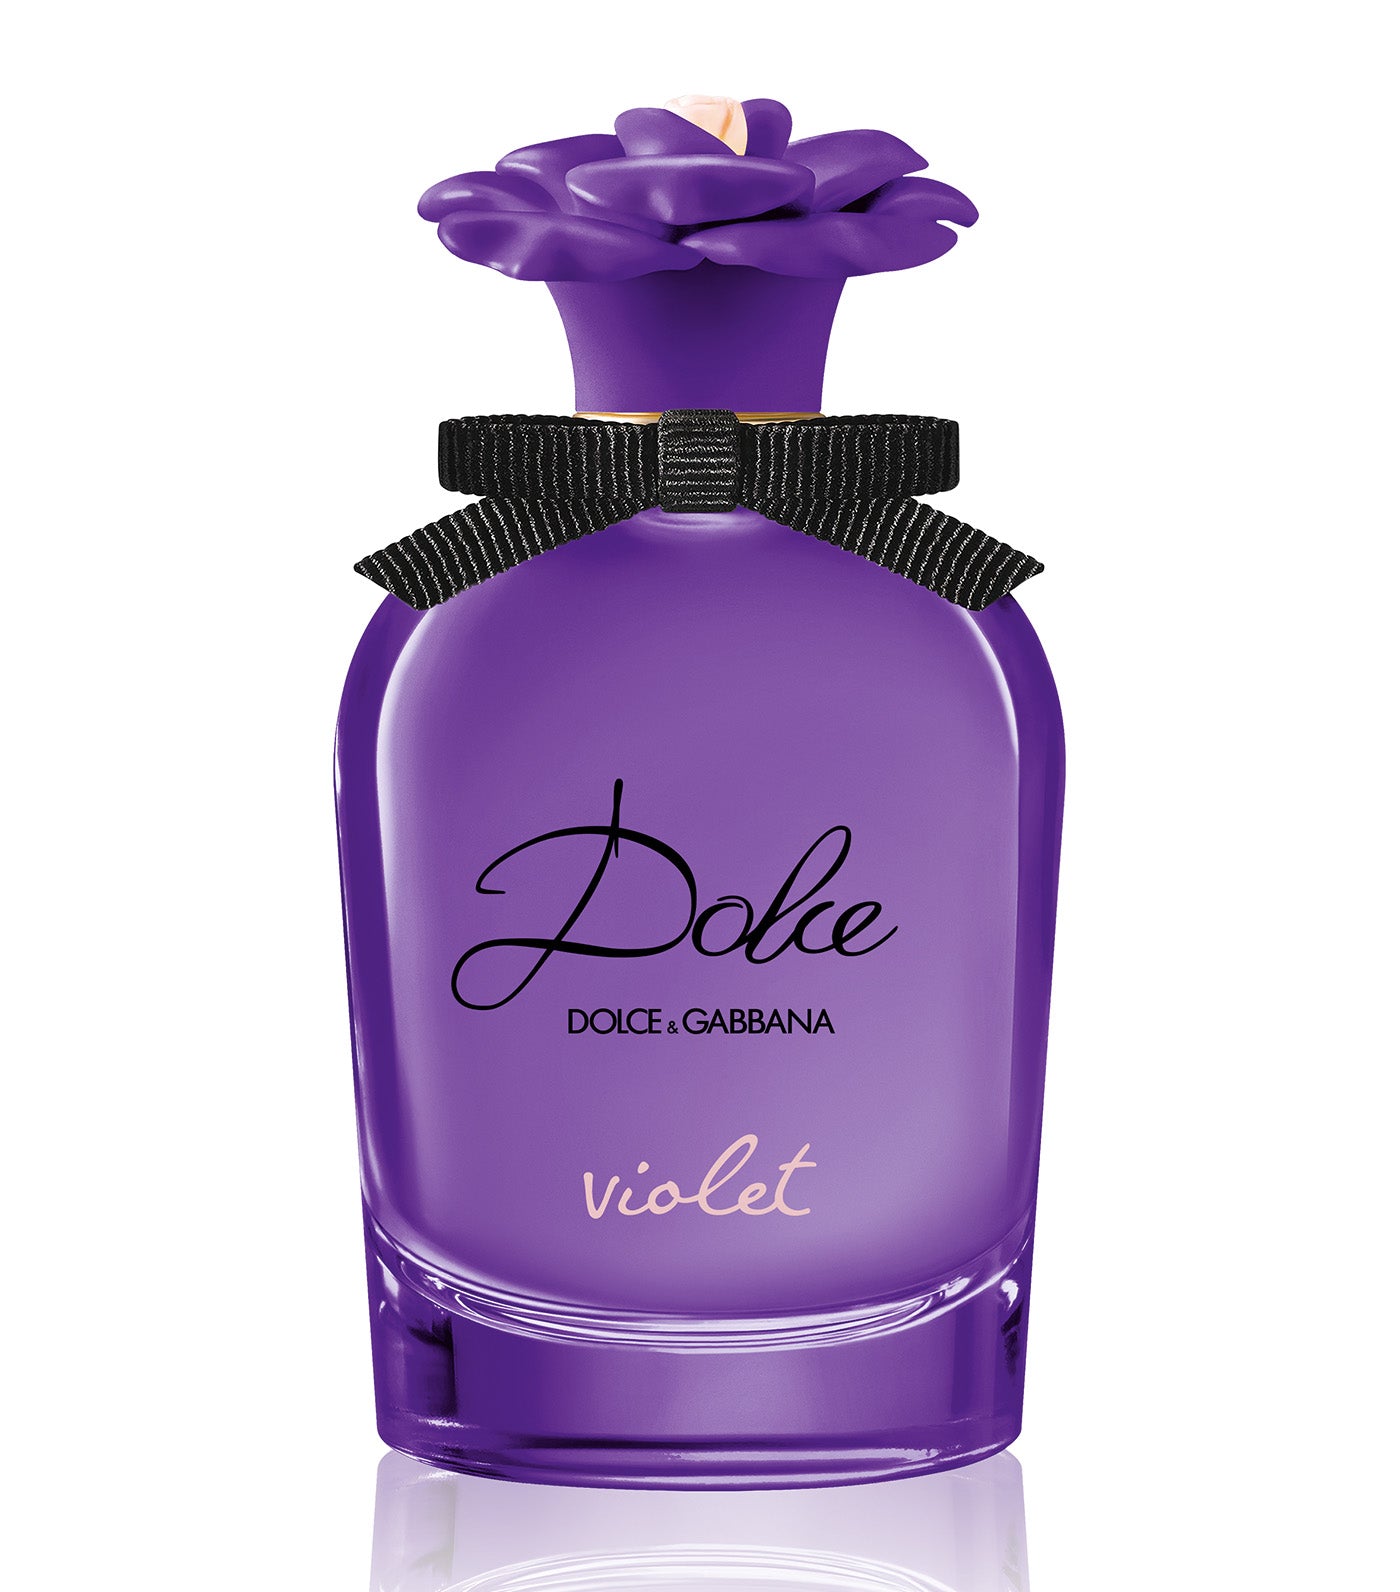 Dolce Violet Eau de Toilette